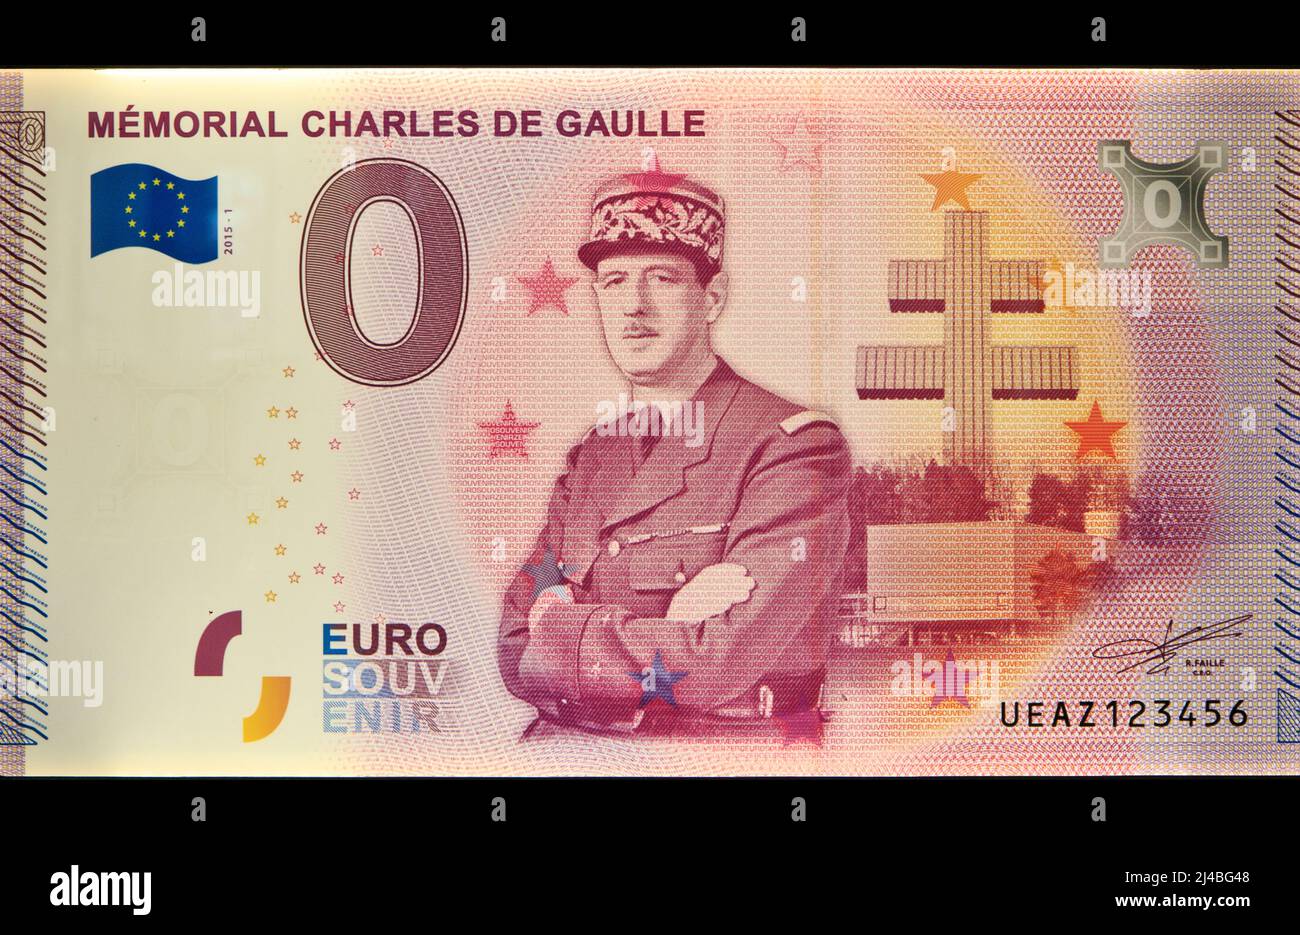 Le président français Charles de Gaulle (1890-1970) sur un billet/souvenir de 500 euros au Mémorial Charles de Gaulle à Colombey-les-deux-Églises, France Banque D'Images